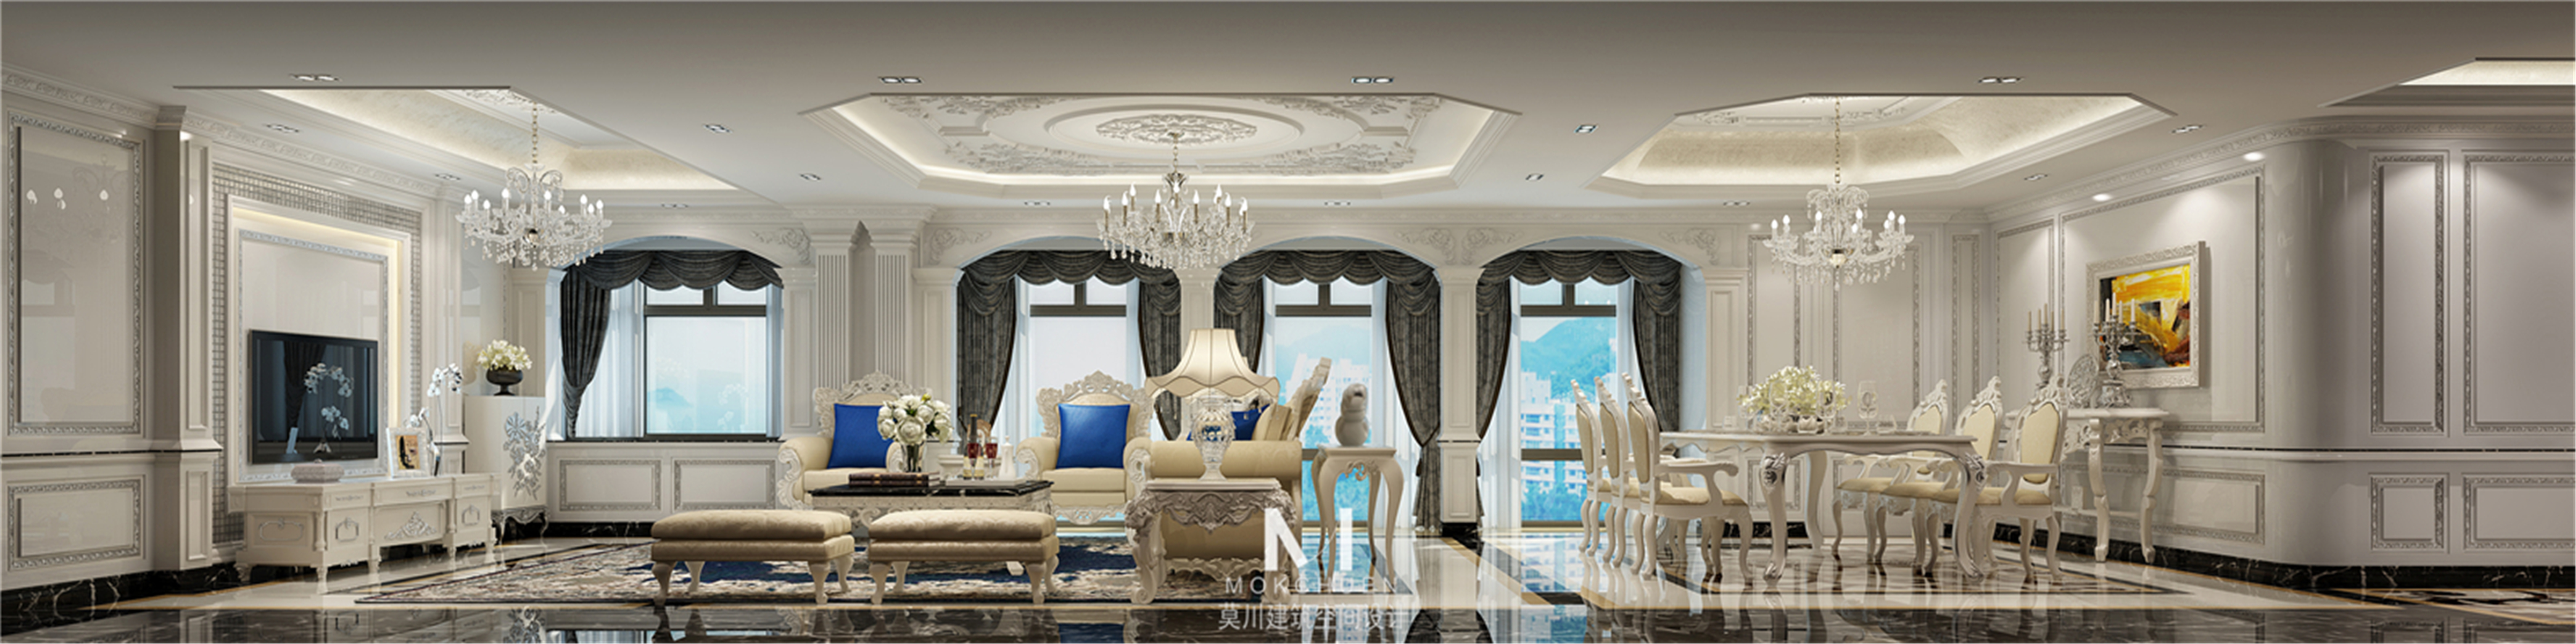 客厅图片来自莫川王远在中信红树湾-浪漫法式风格的分享